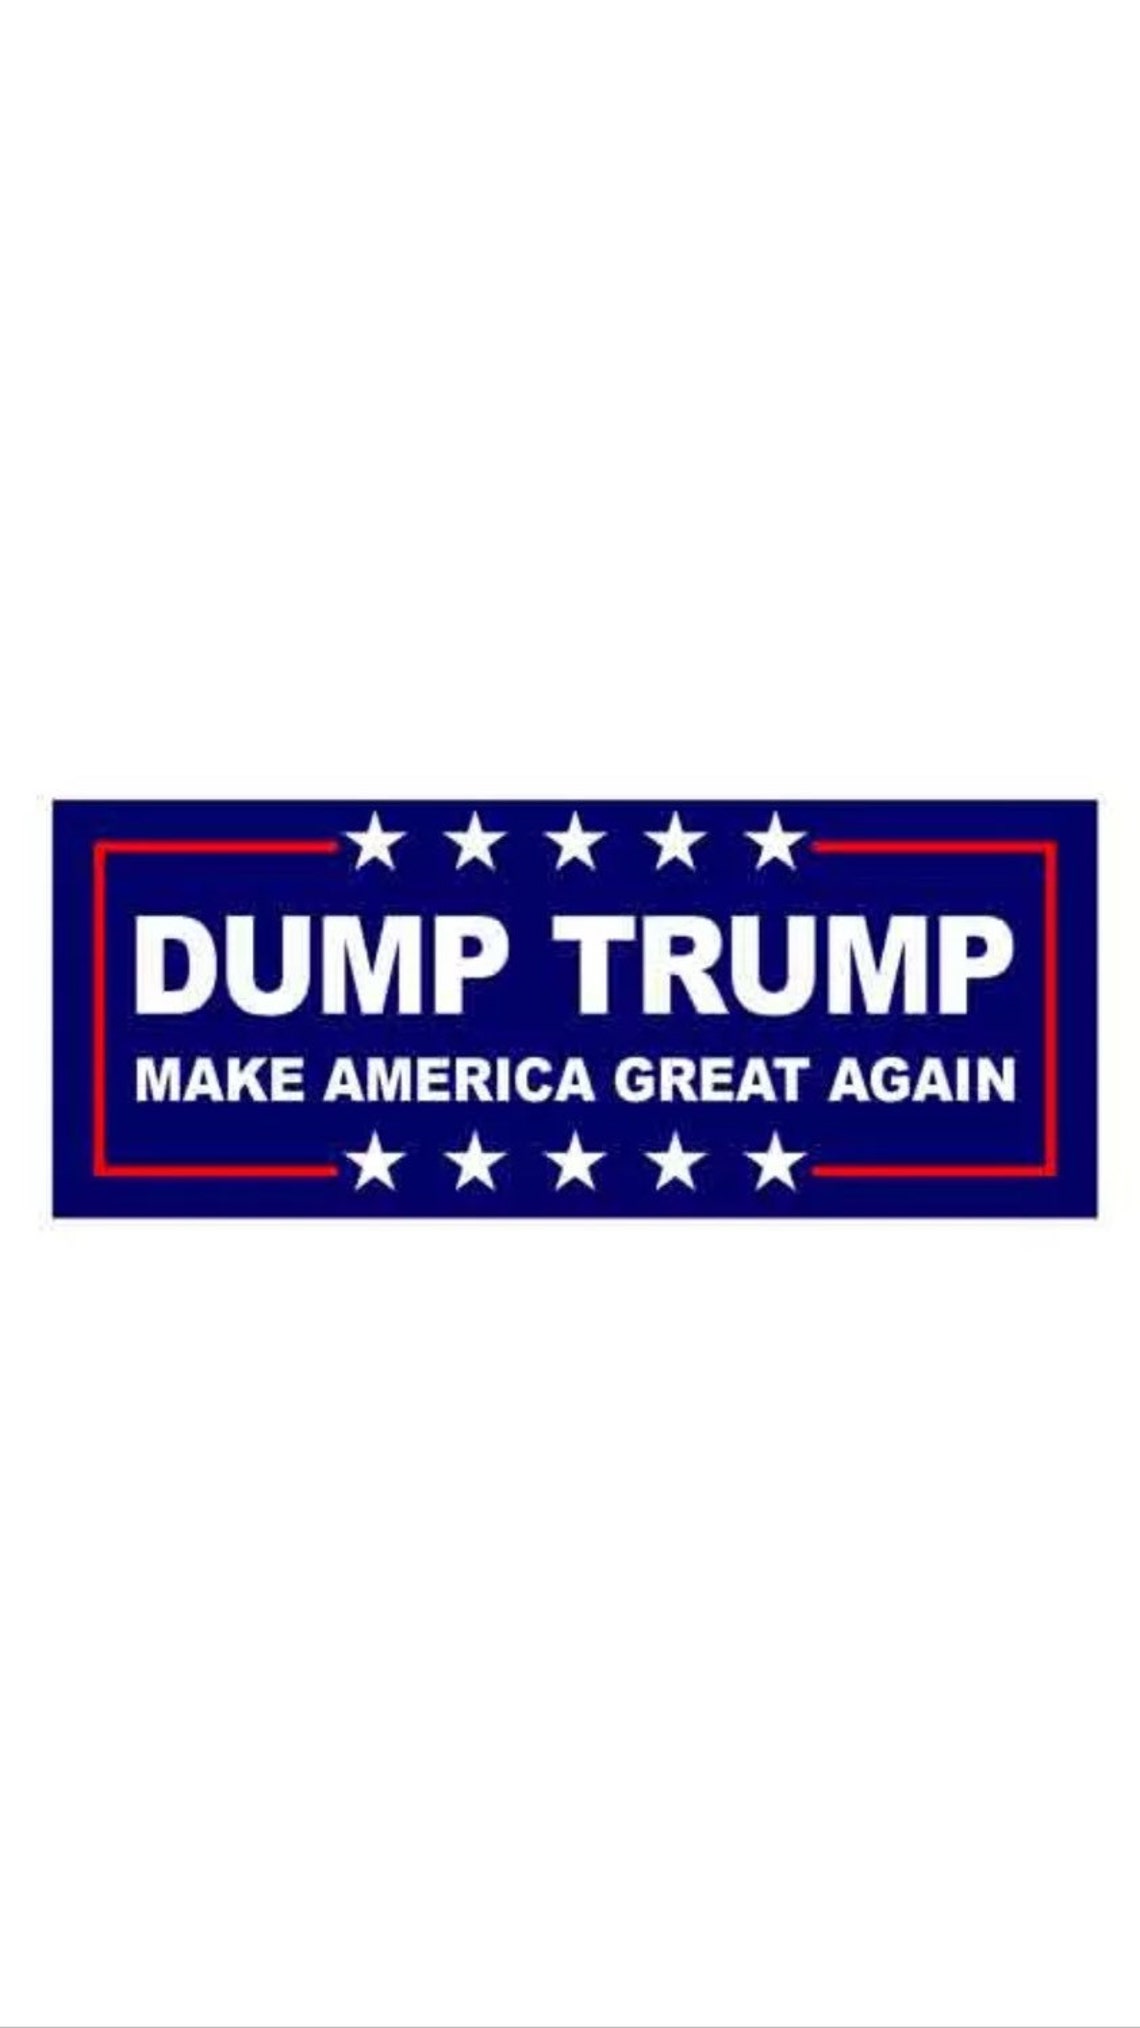 Anti Trump Bumper Sticker Dump Trump 2020 Make America Great image 0